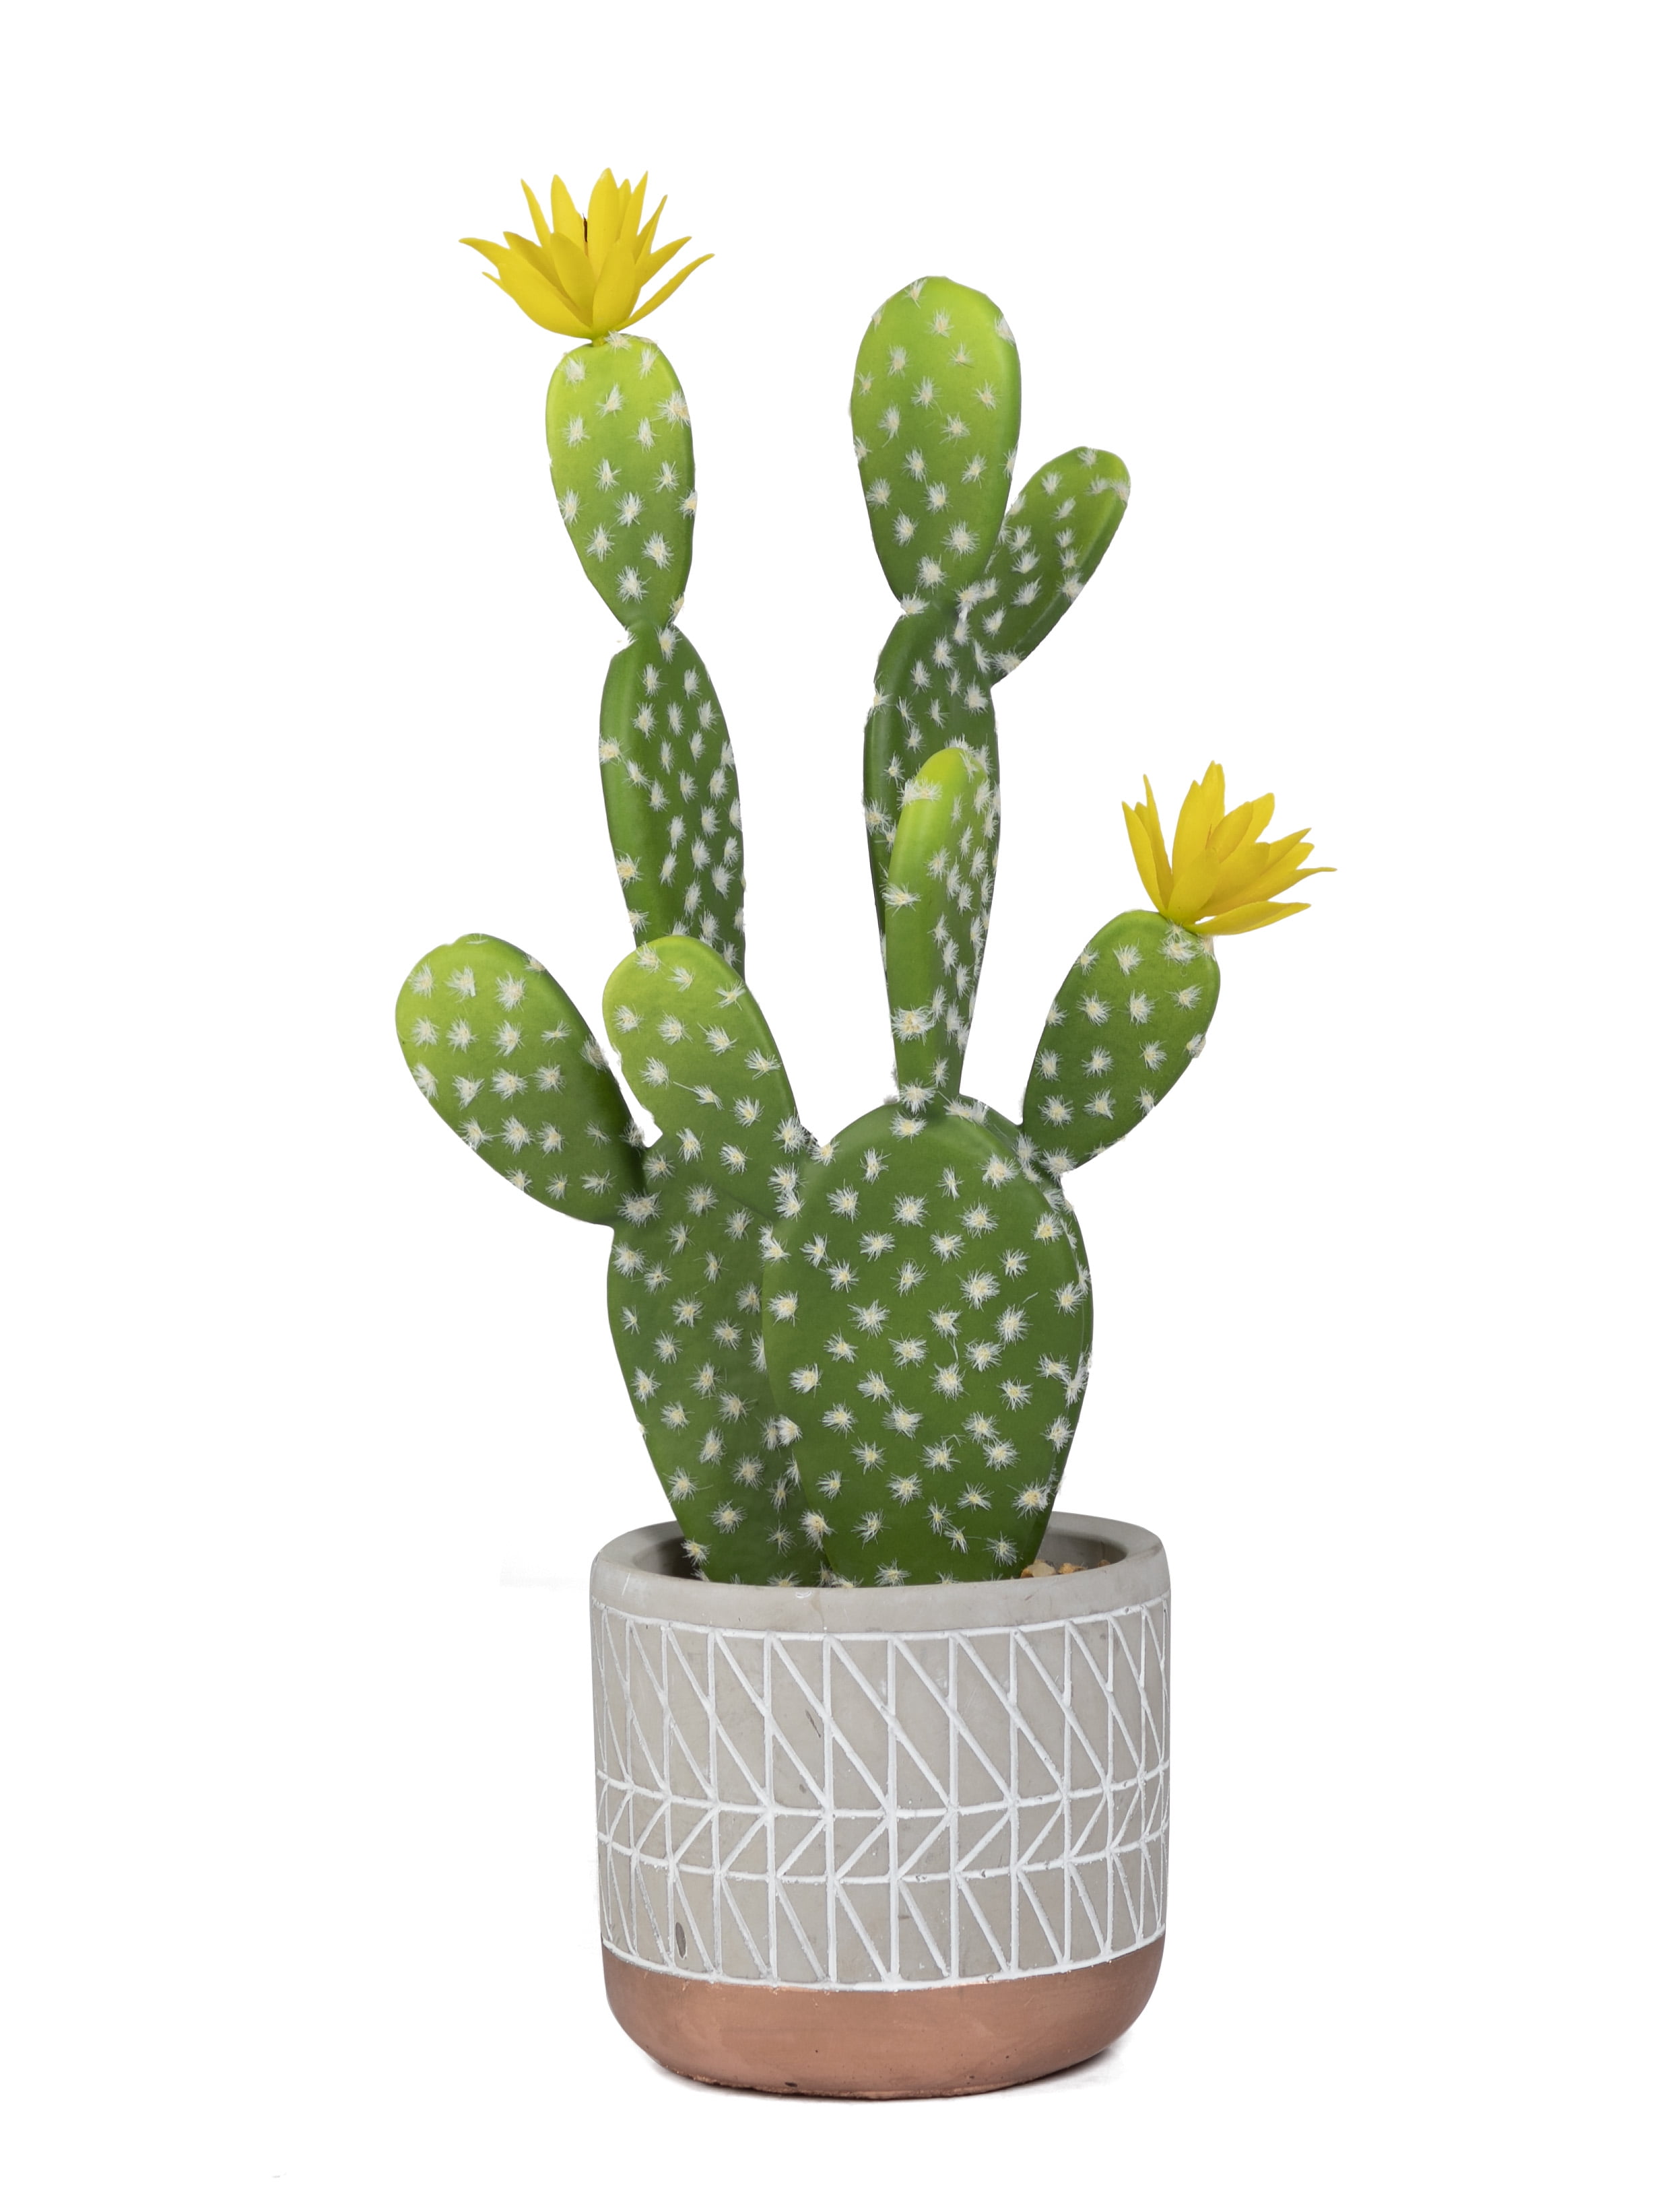 Details about   Mini Artificial Tropical PlantSucculent Cactus PlantsIndoor Houseplant 